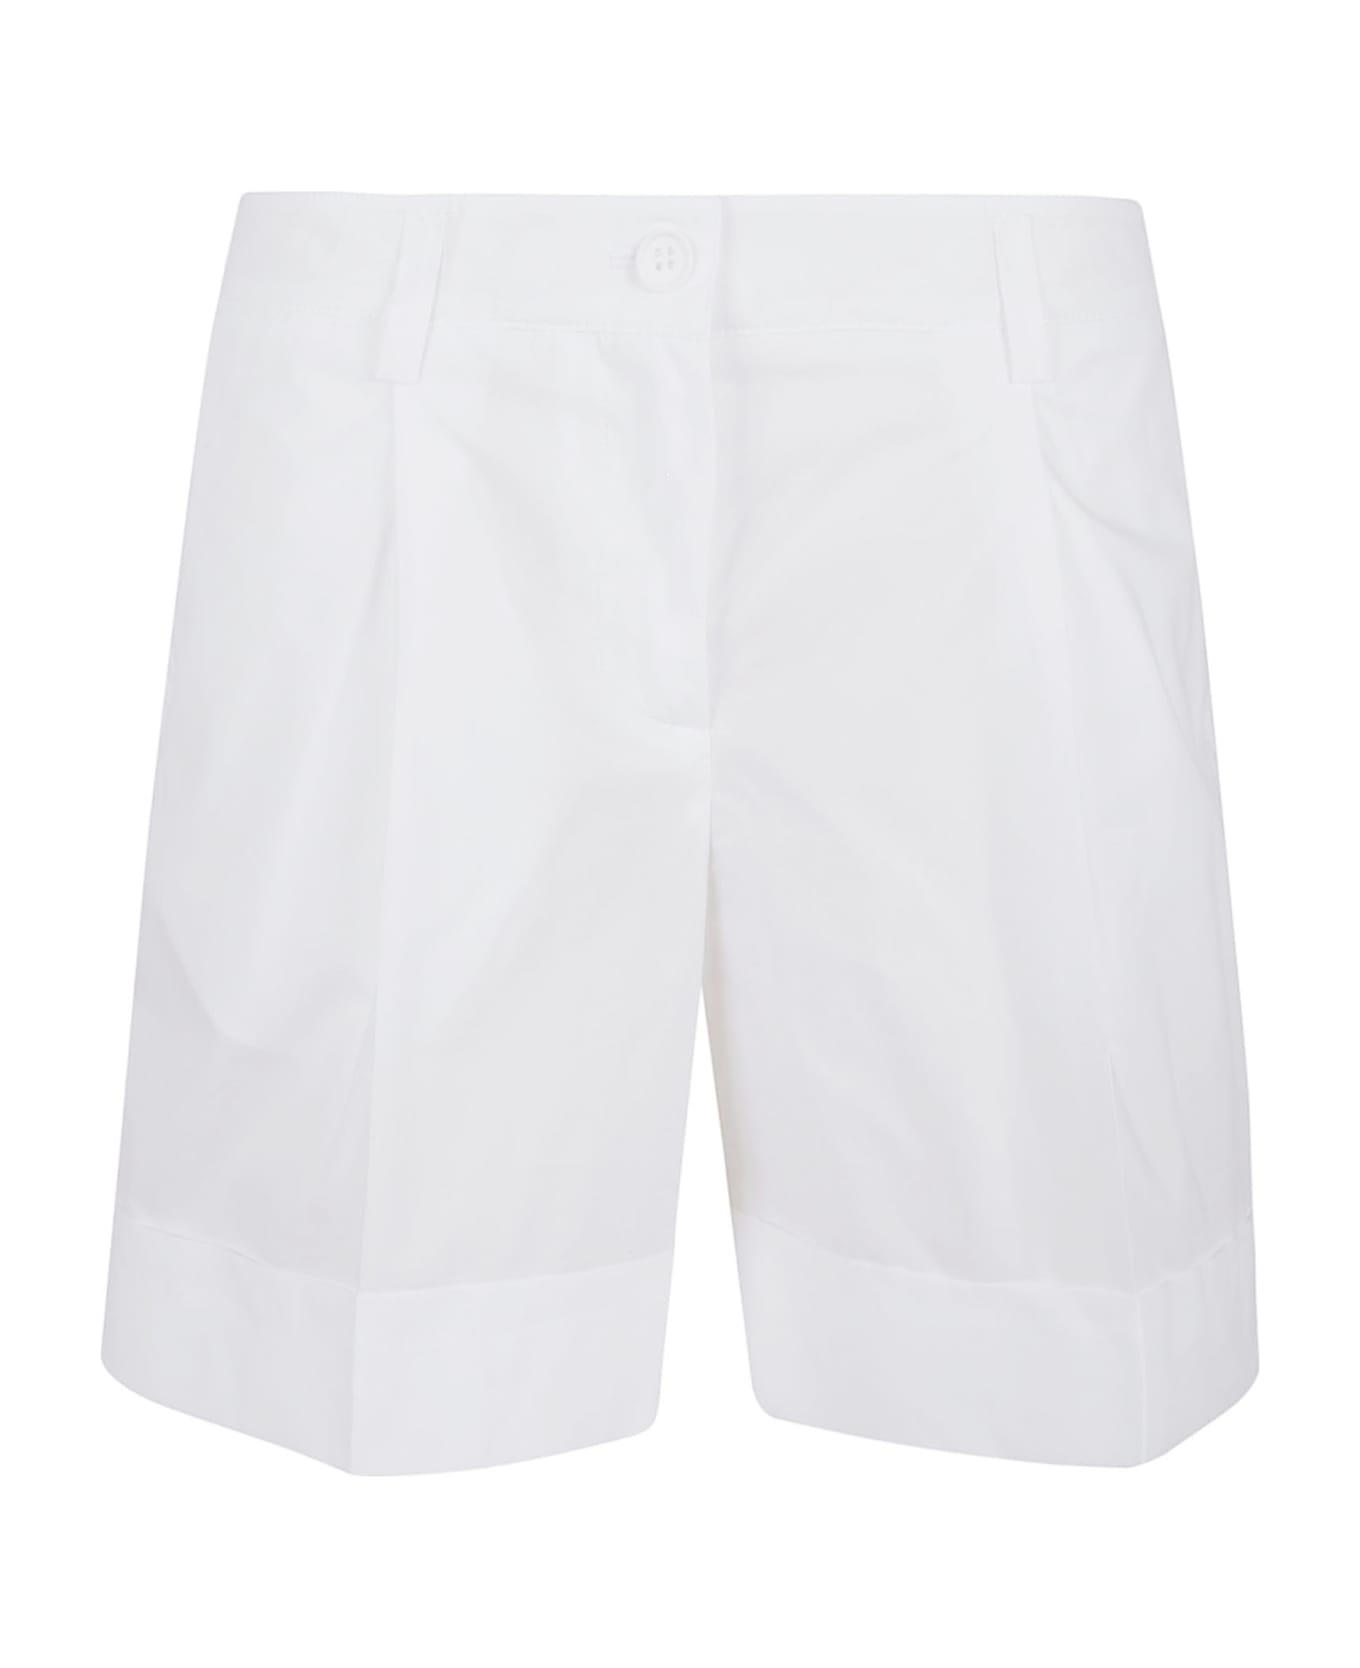 Parosh White Cotton Shorts - Bianco ショートパンツ